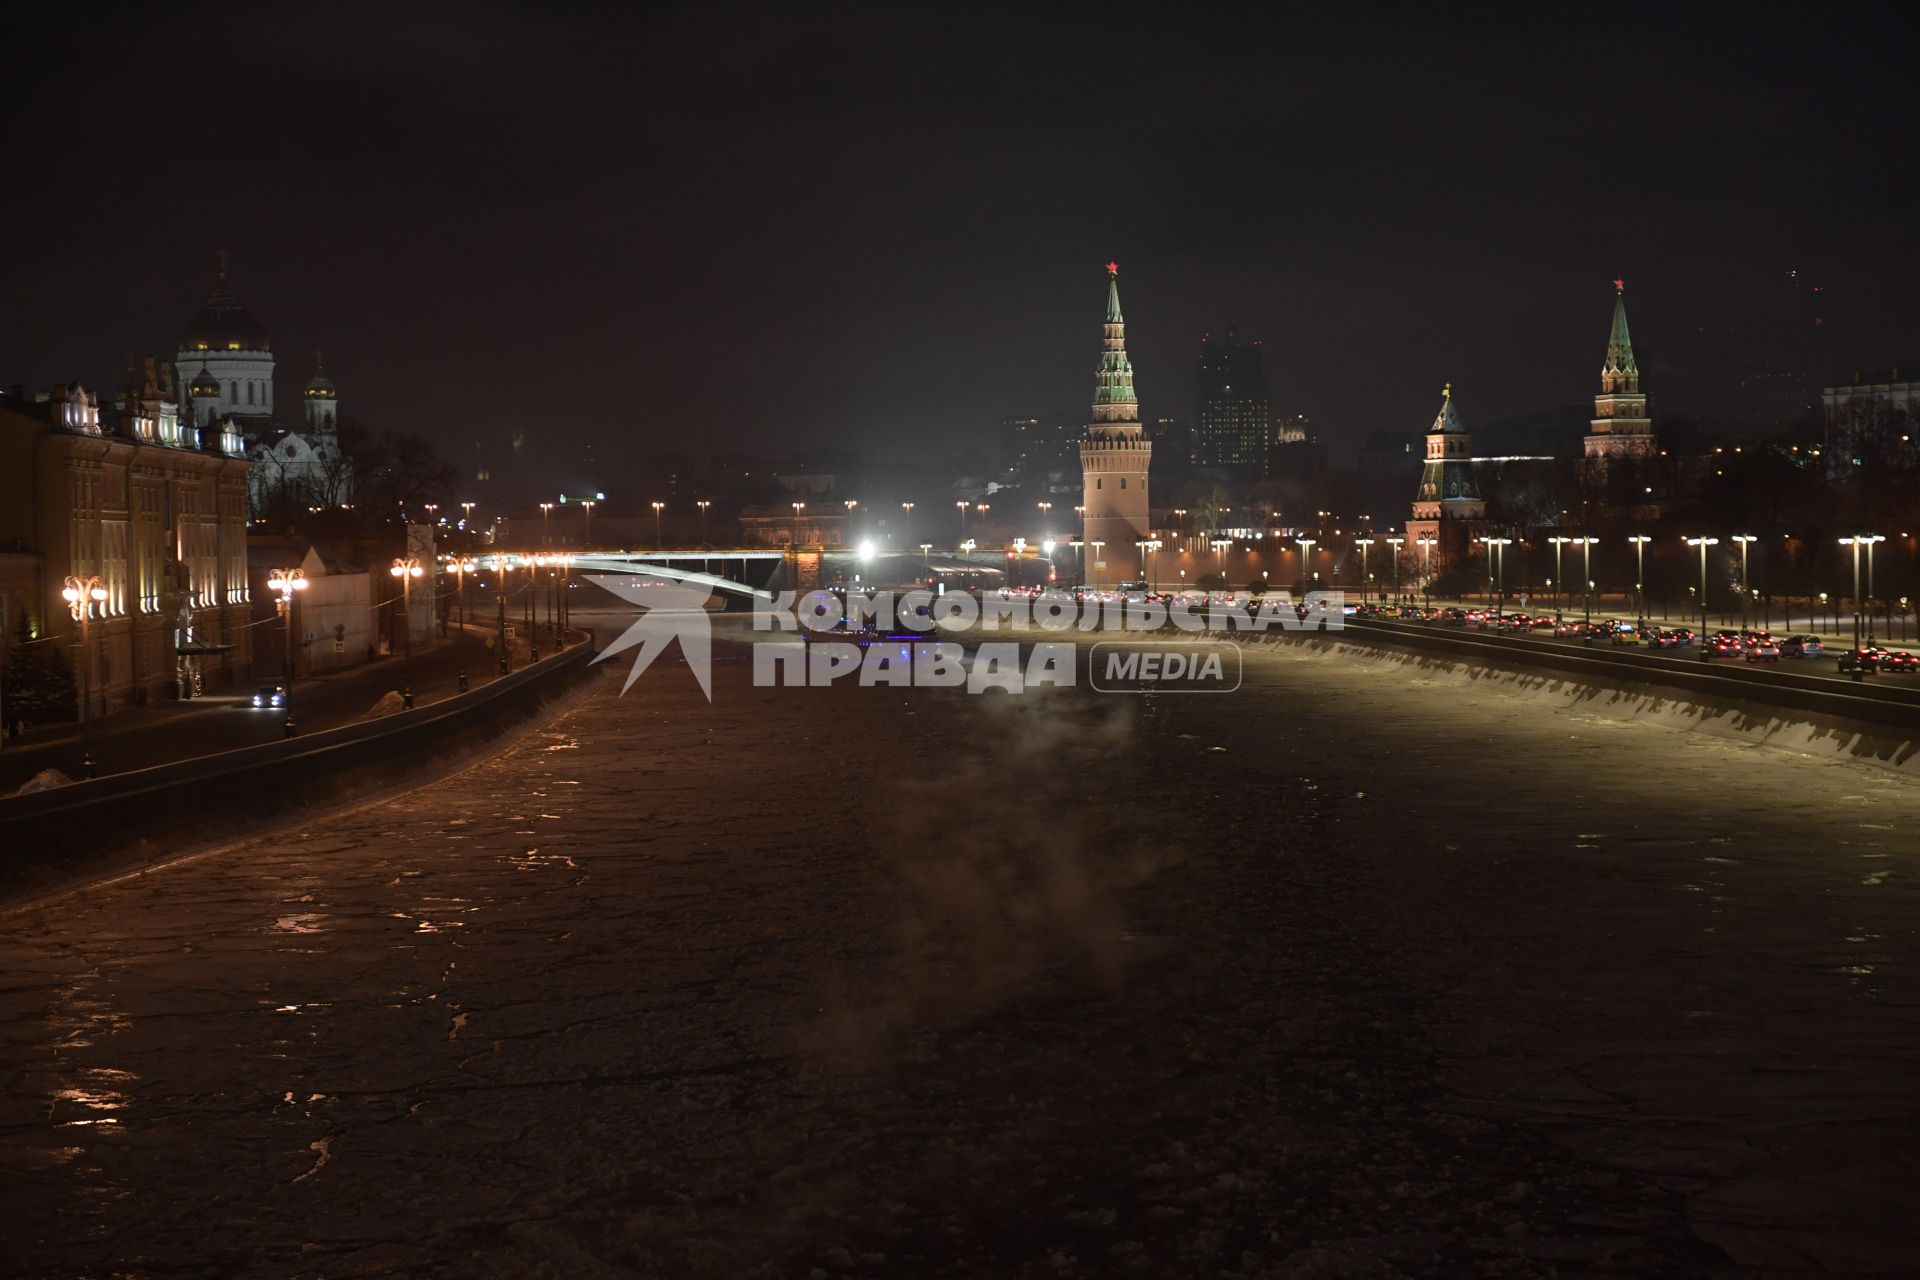 Москва. Теплоход на Москве-реке  в районе  Кремлевской набережной.